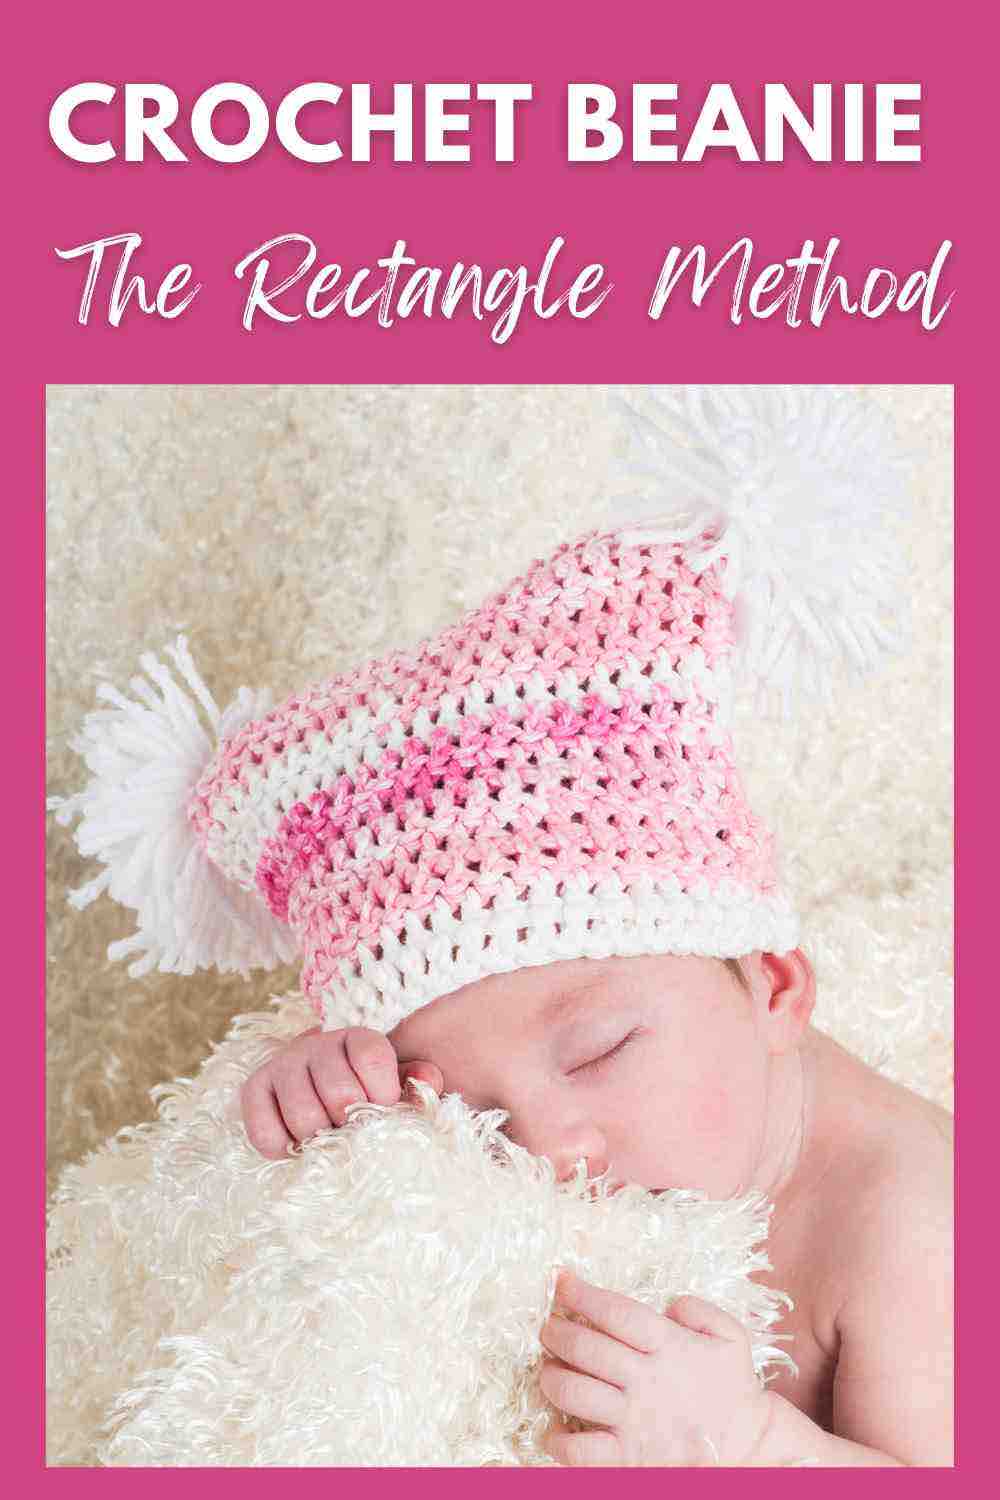 Crochet-Beanie-Rectangle-Method